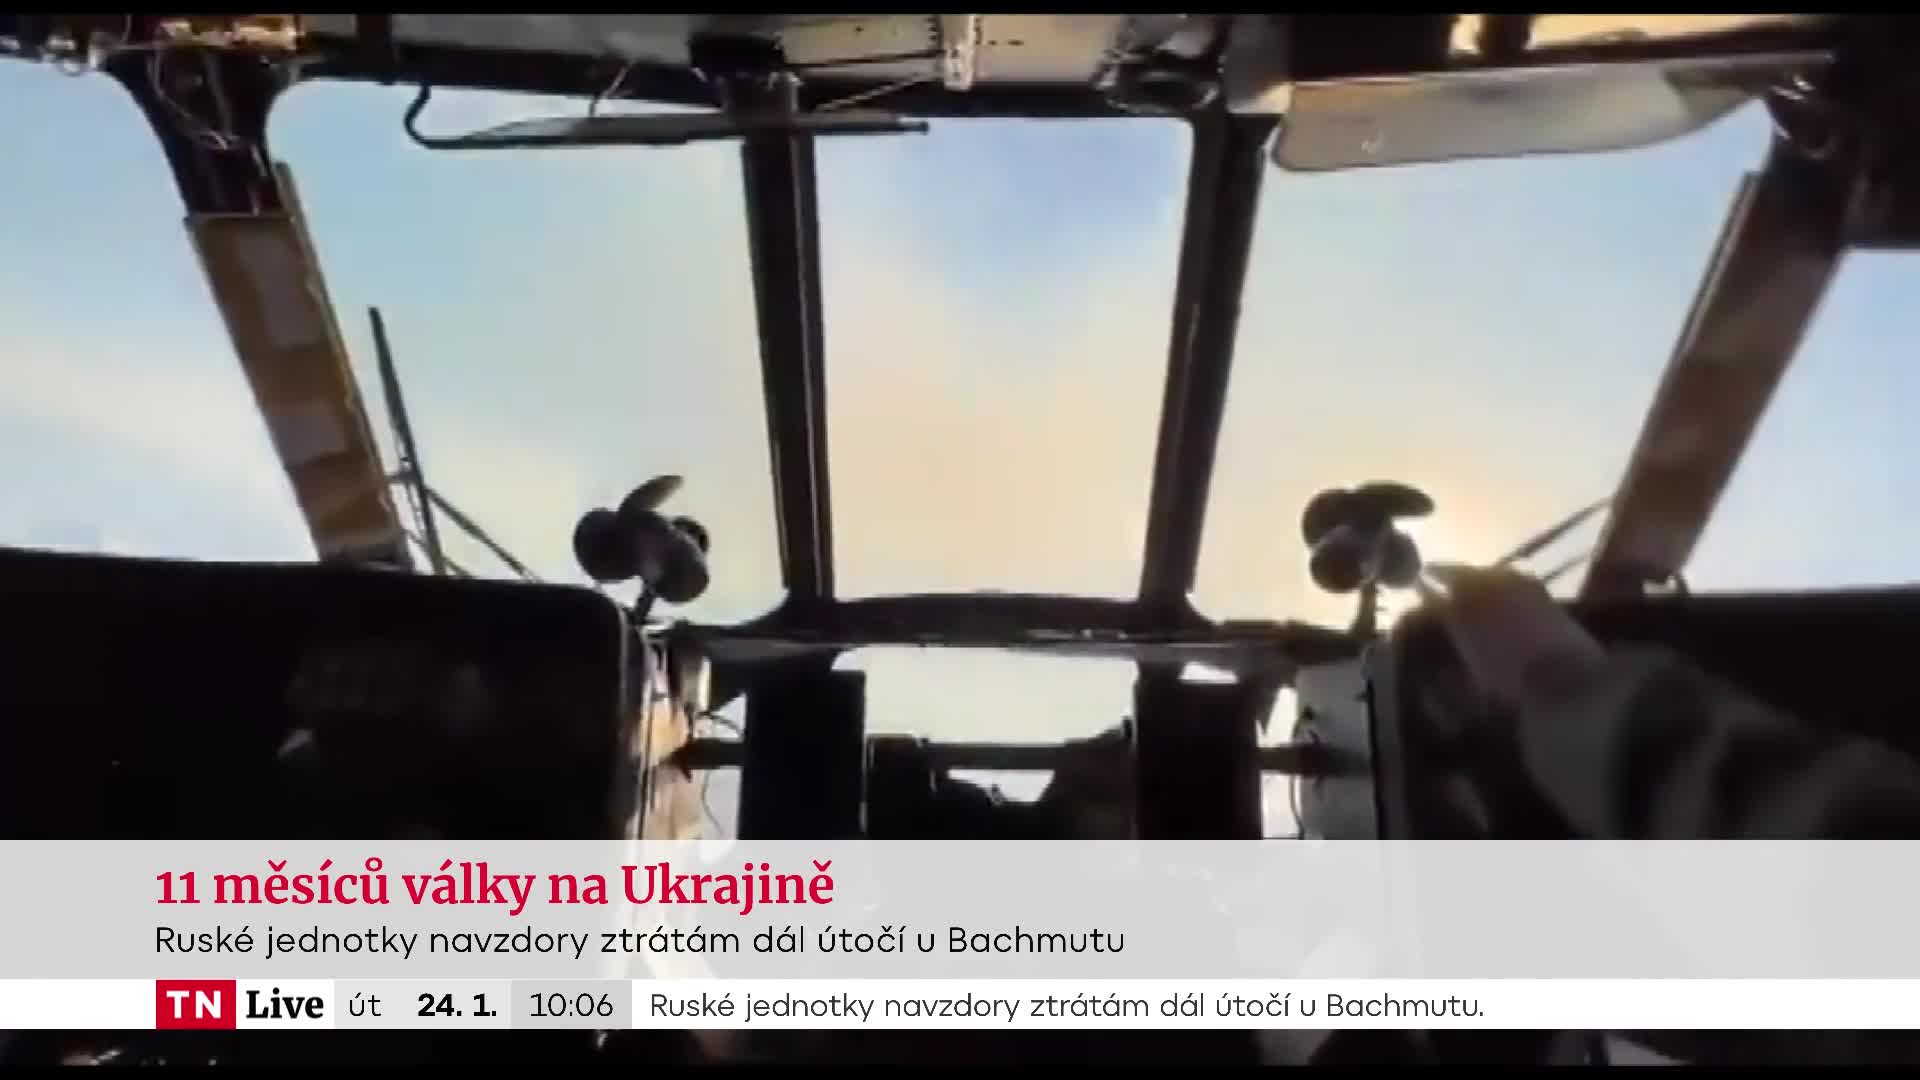 Ruské jednotky dál útočí u Bachmutu. Hrdinný vzdor Ukrajinců vejde do dějin, říká Vojáček